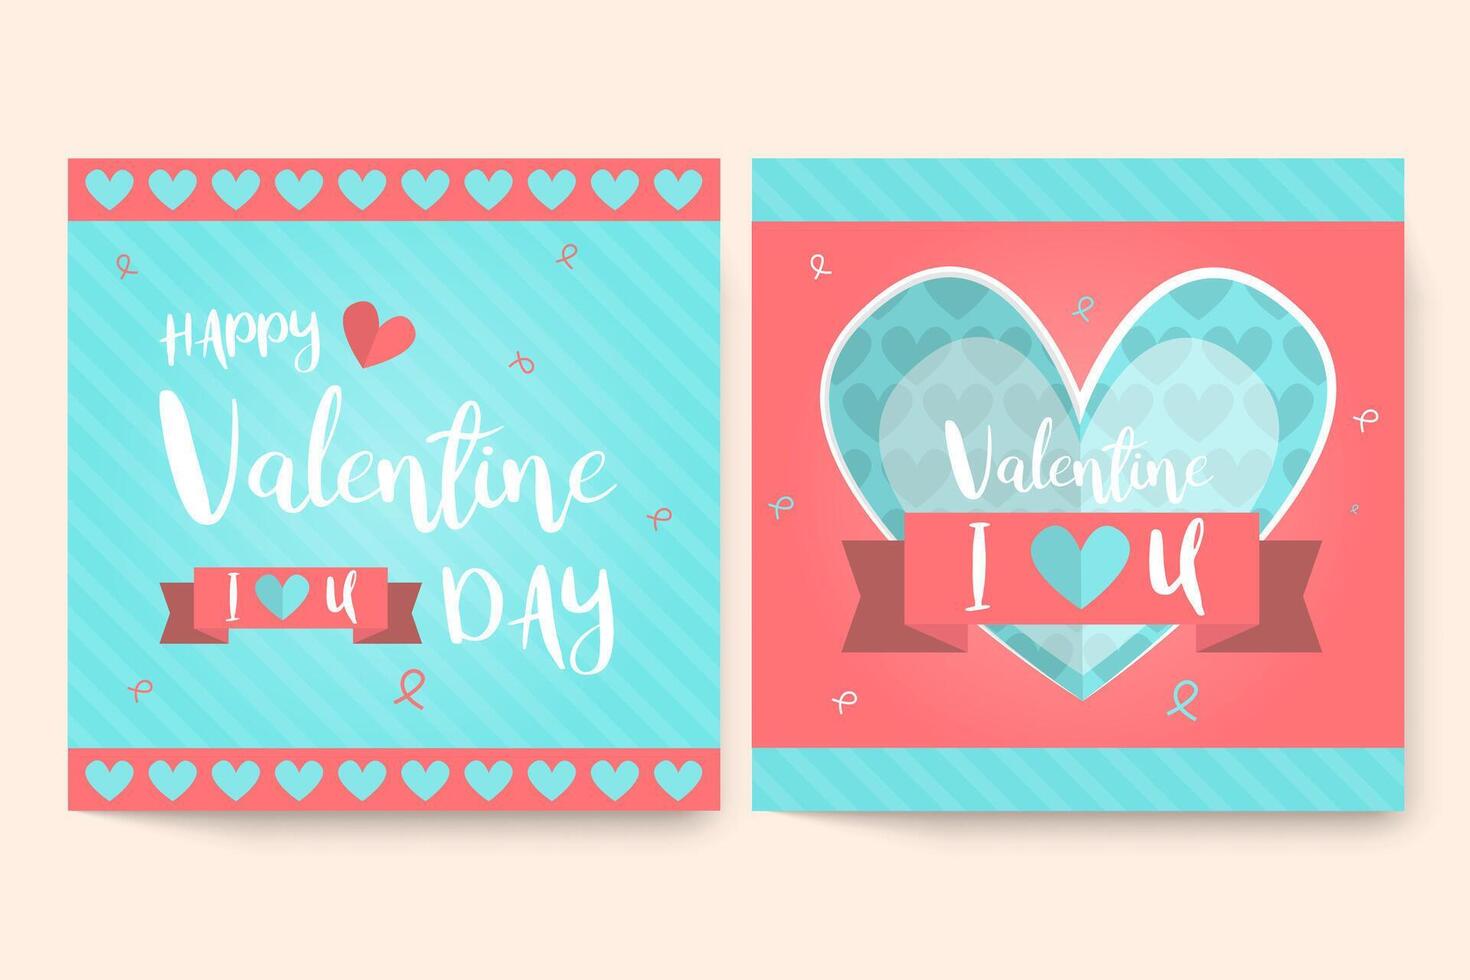 Satz von Valentinstag-Grußkarten mit handgeschriebenem Gruß Happy Valentinstag und ich liebe dich im Hintergrund. glücklicher valentinstag, liebe dich wortkonzept. vektor